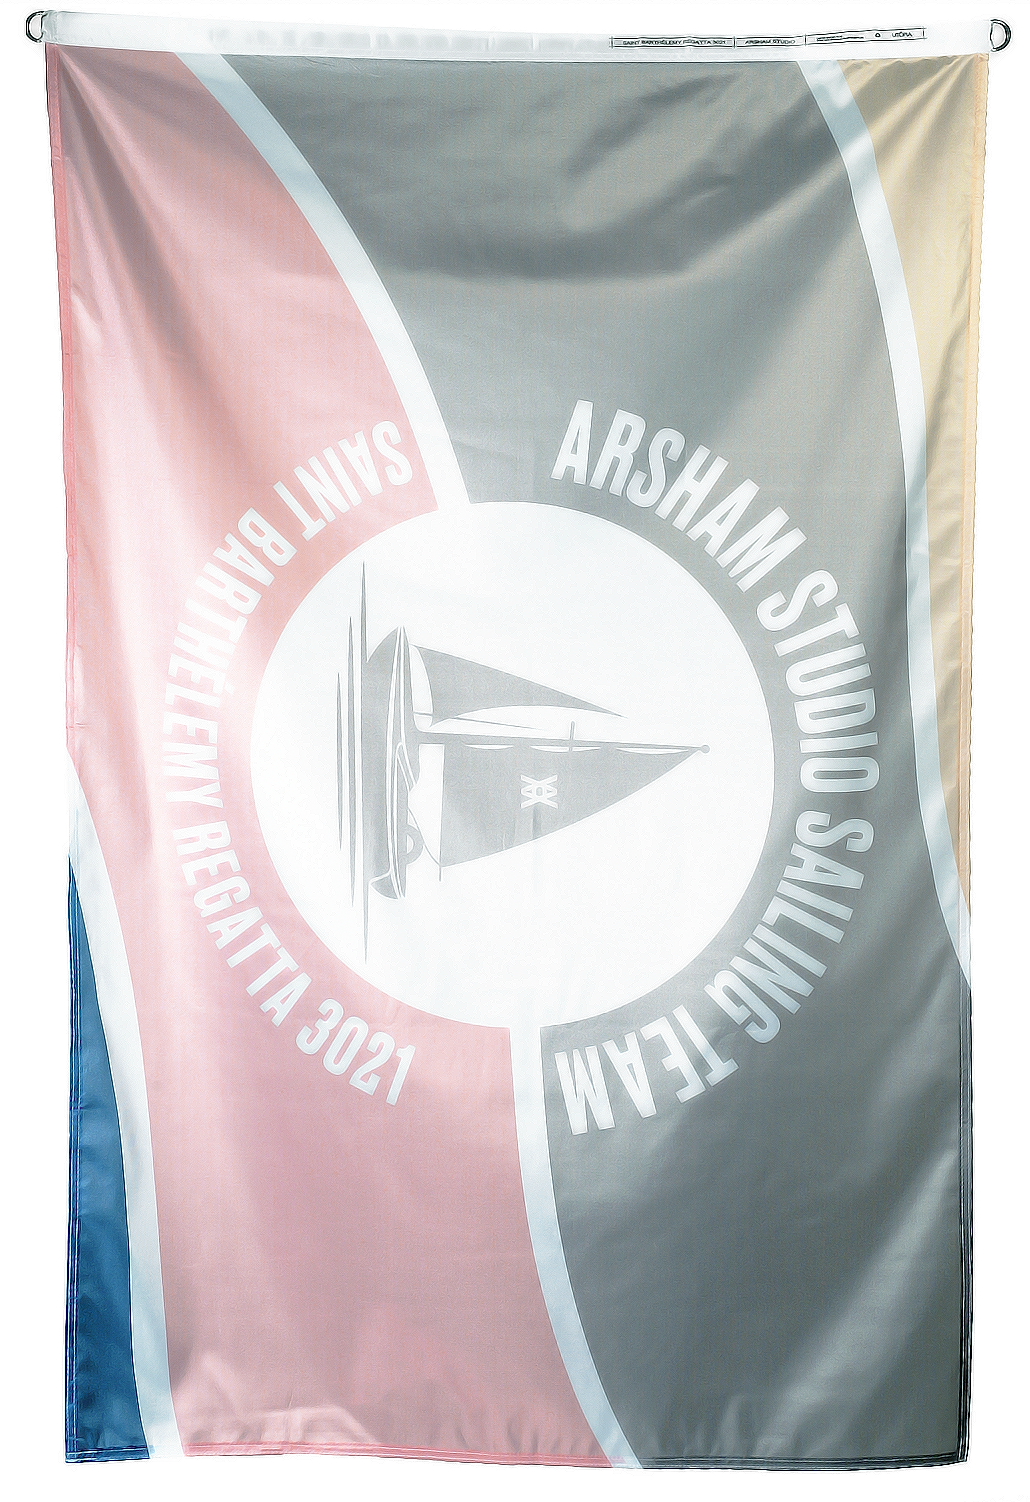 Arsham Studio x Utöpia Sailing Team 3021 - St Barths Regatta Beach Tow